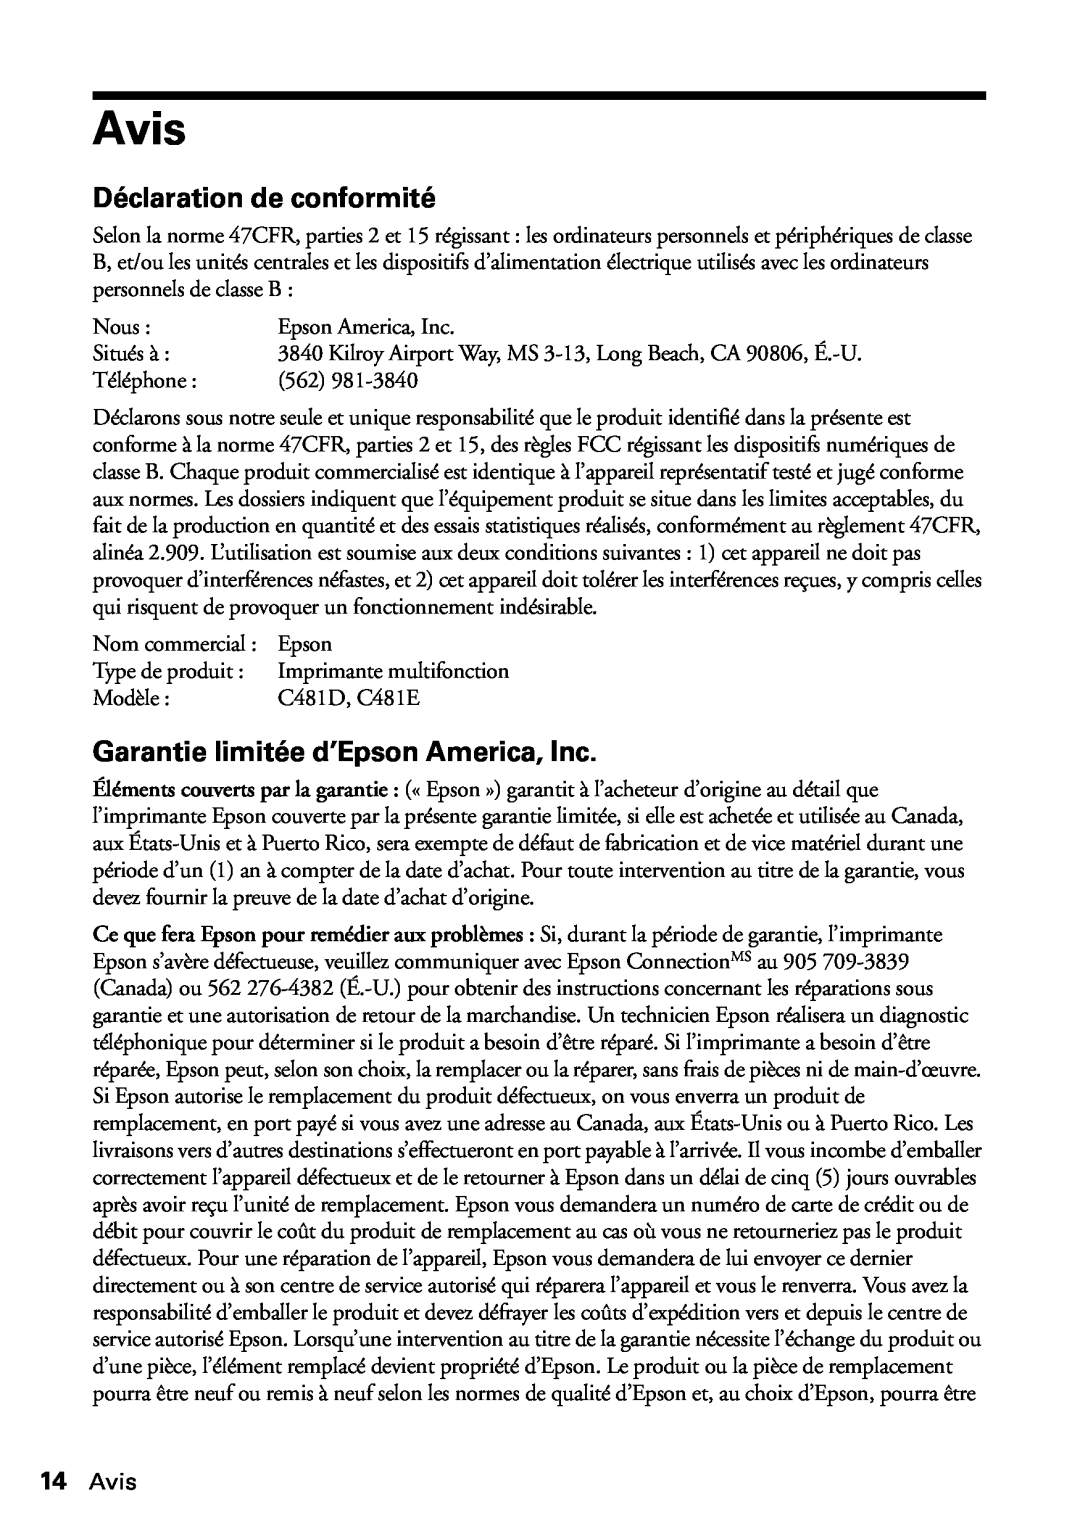 Epson WF-3620, WF-3640 manual Avis, Déclaration de conformité, Garantie limitée d’Epson America, Inc 